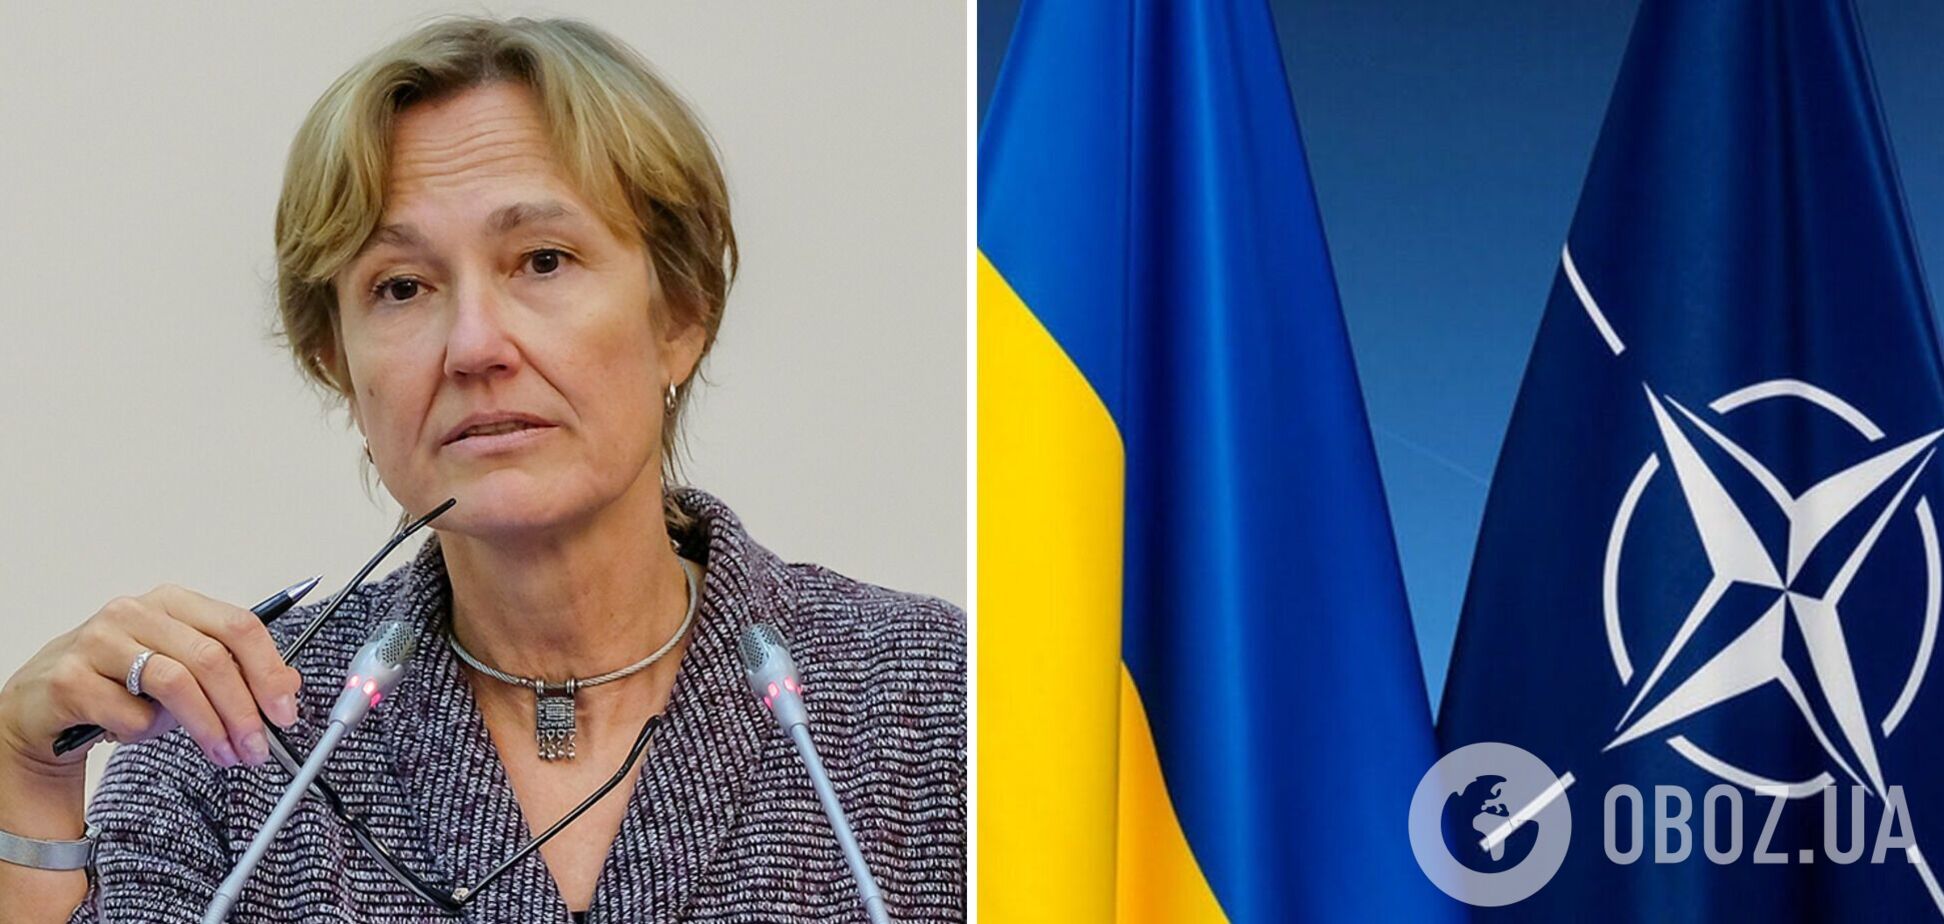 Посол Німеччини про перспективи вступу України в НАТО: потрібен консенсус, усі бояться війни